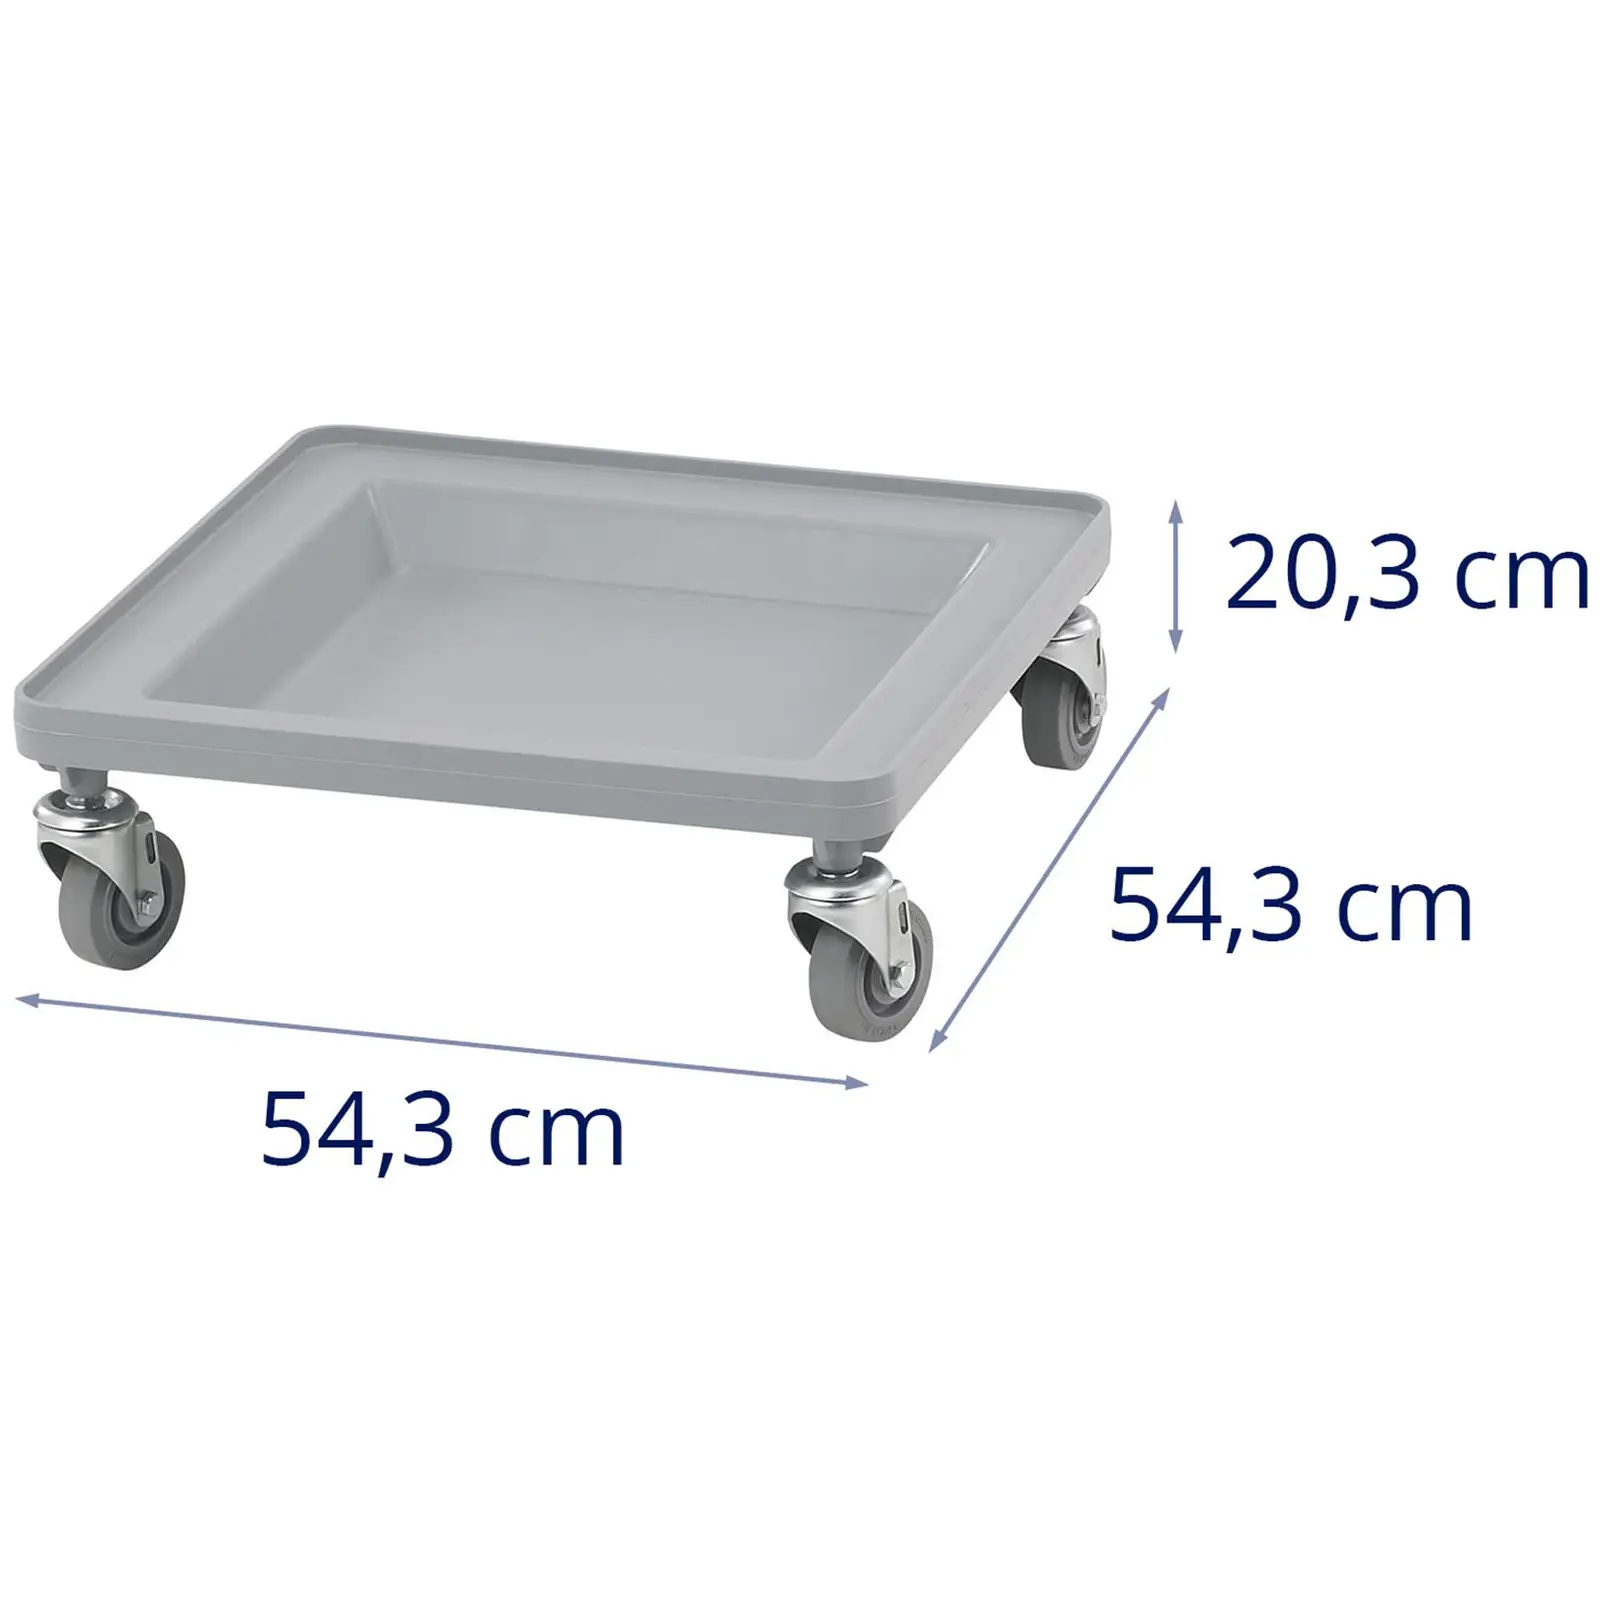 Charriot pour casier Camrack - 159 kg - 54,3 x 54,3 x 20,3 cm - Plastique